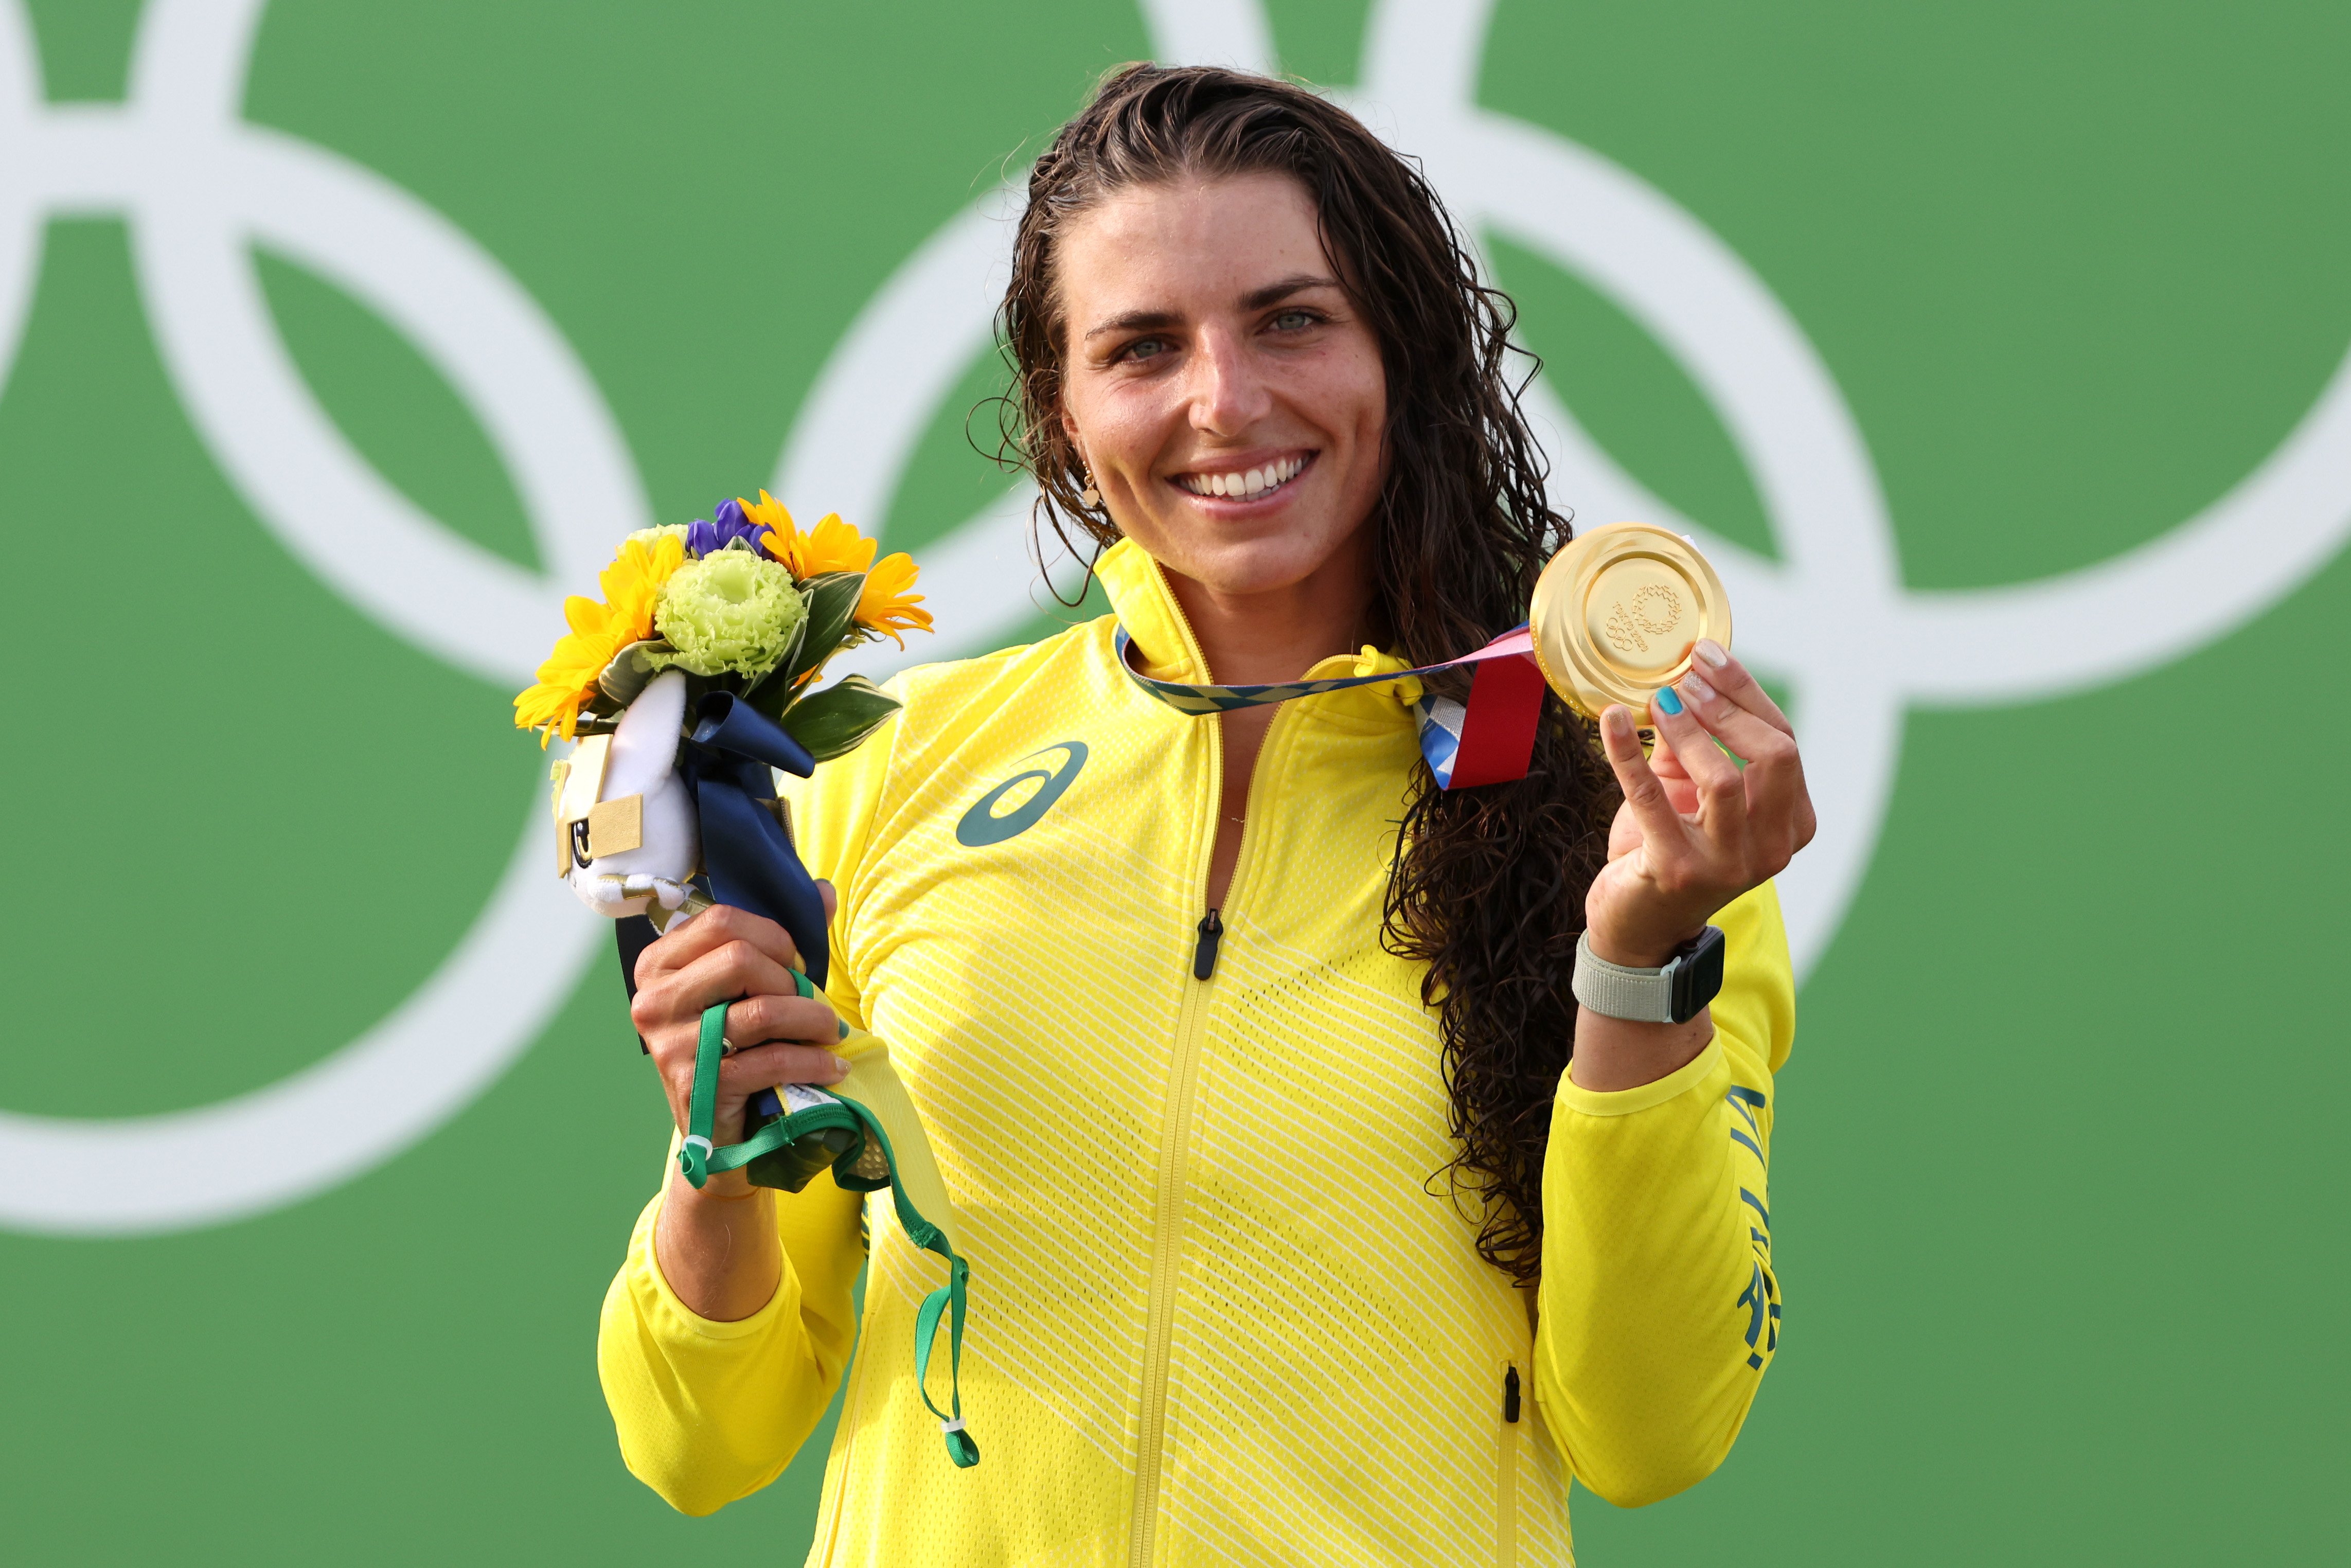 Besonders breites Lächeln bei der Siegerin: Jessica Fox aus Australien freut sich über Gold.